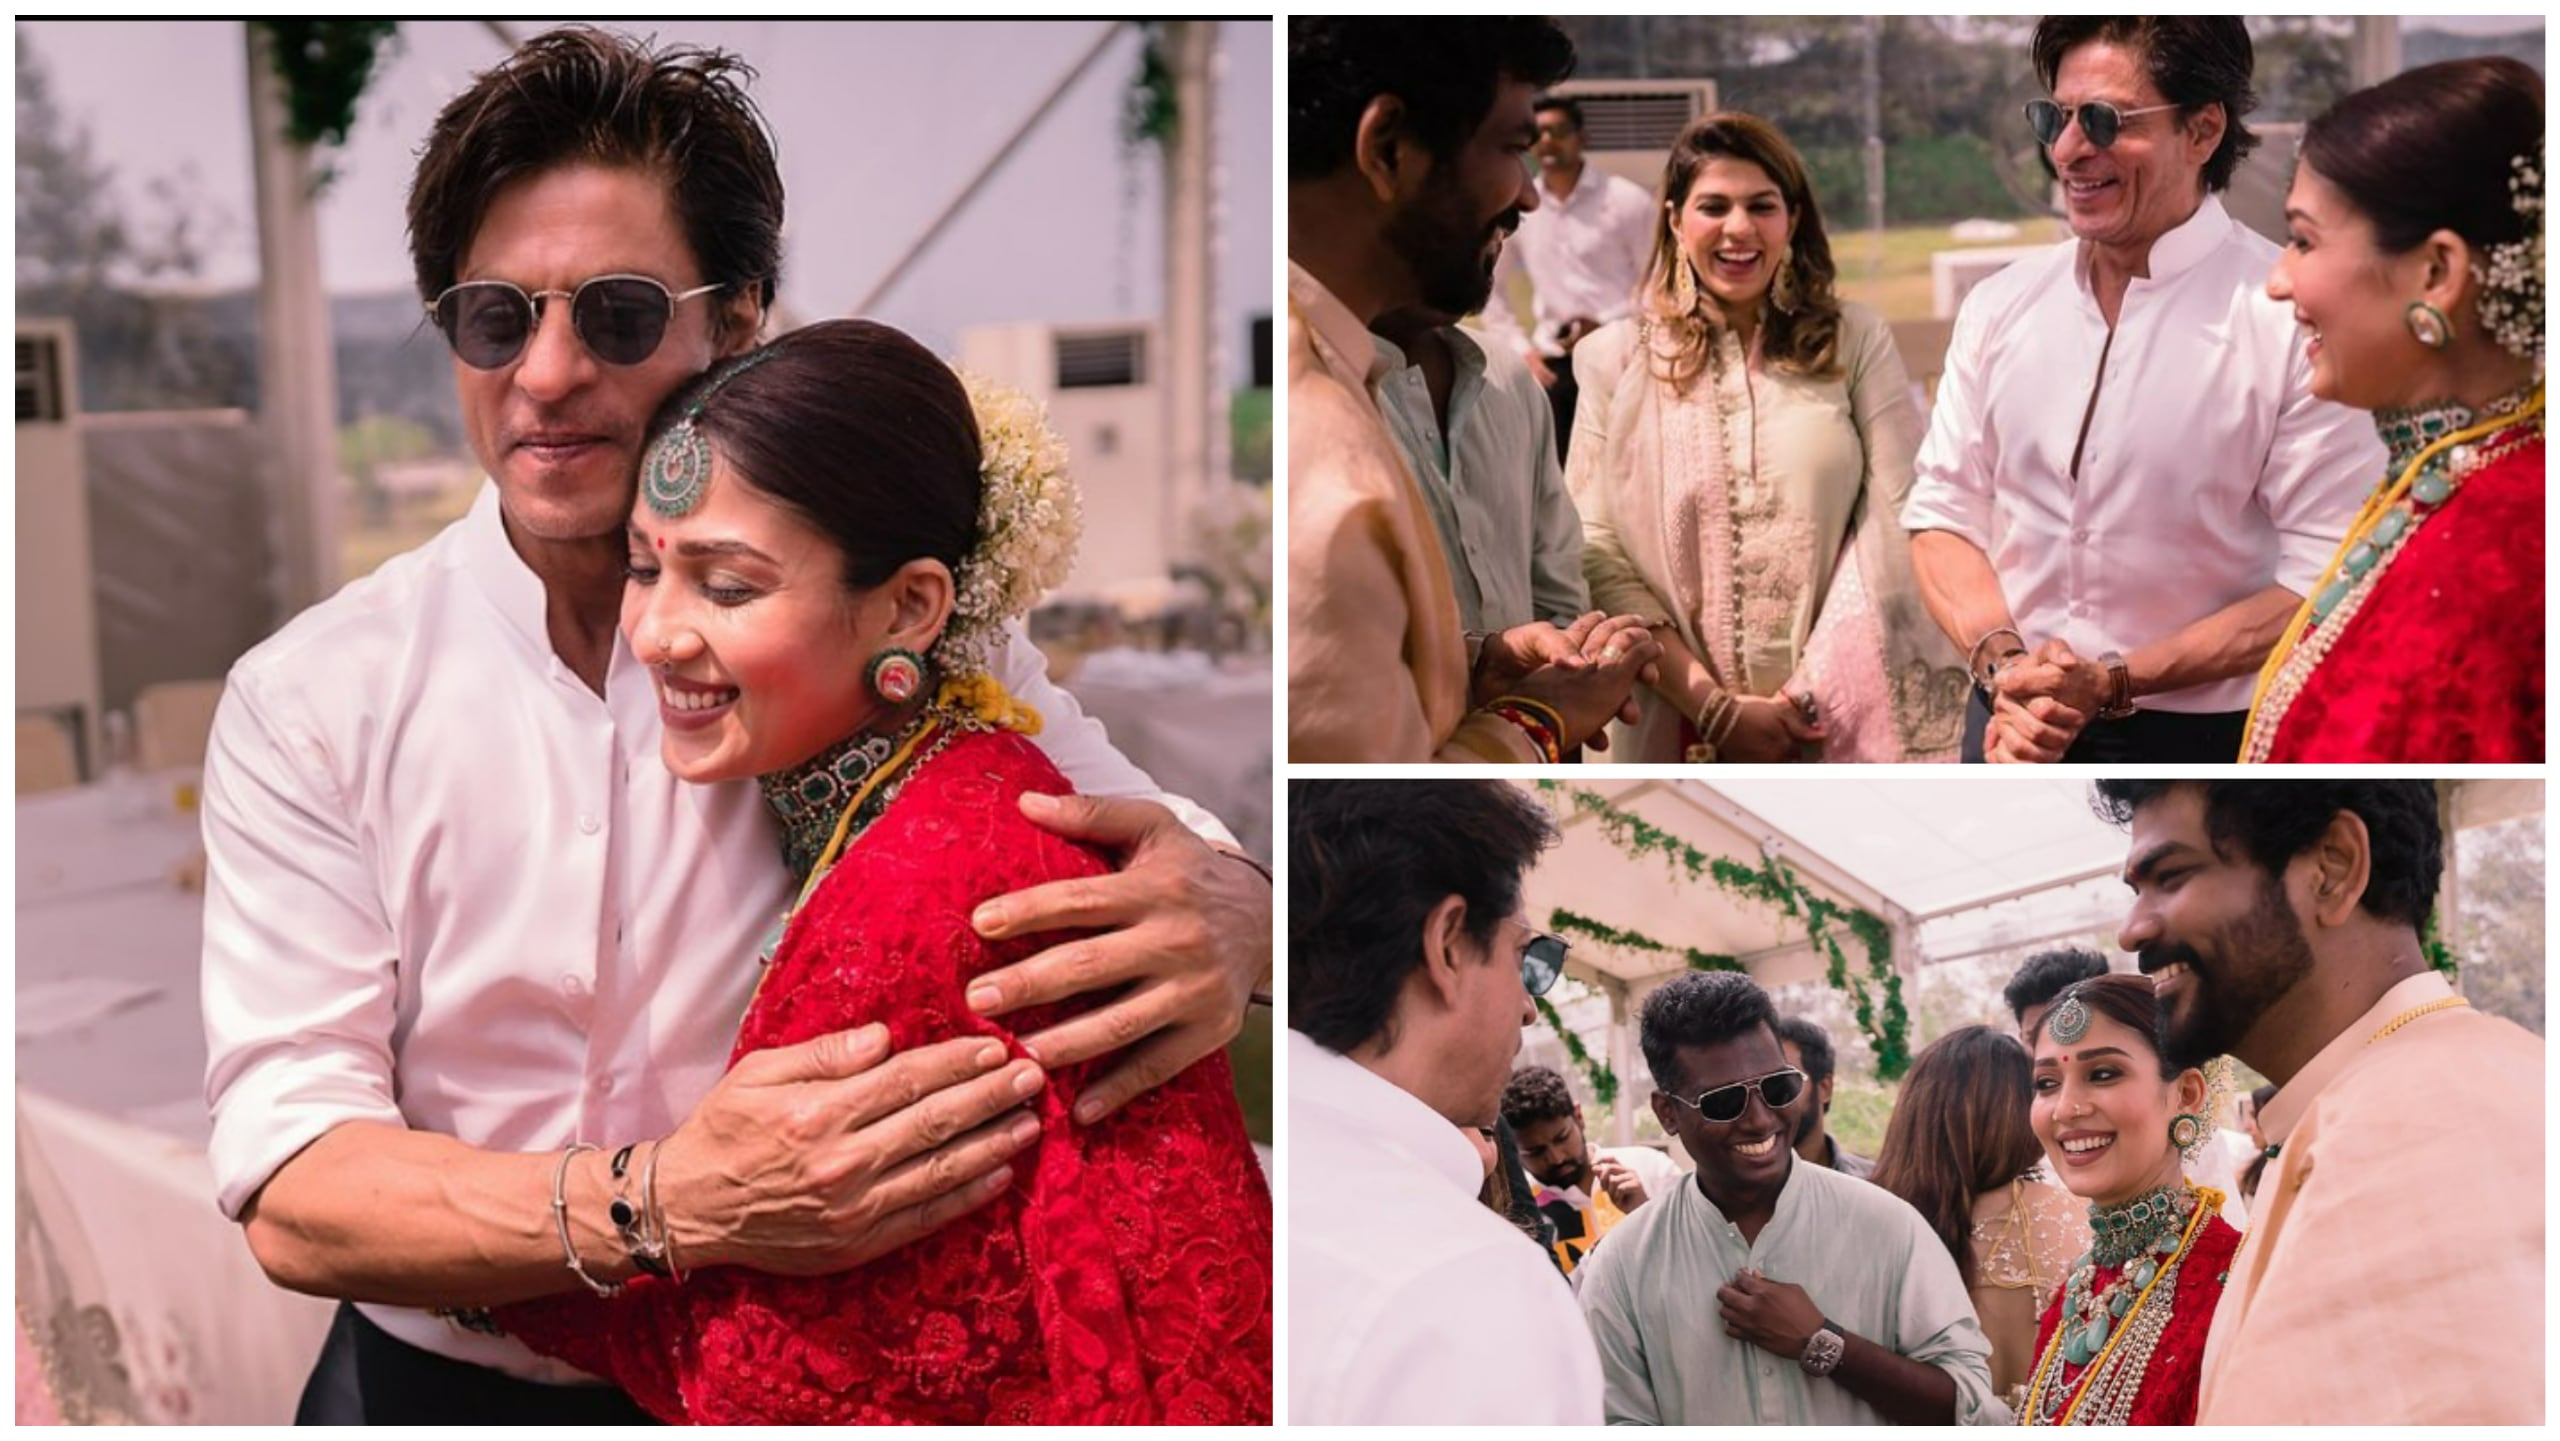 Shah Rukh Khan with Vignesh Shivan and Nayanthara at their wedding.